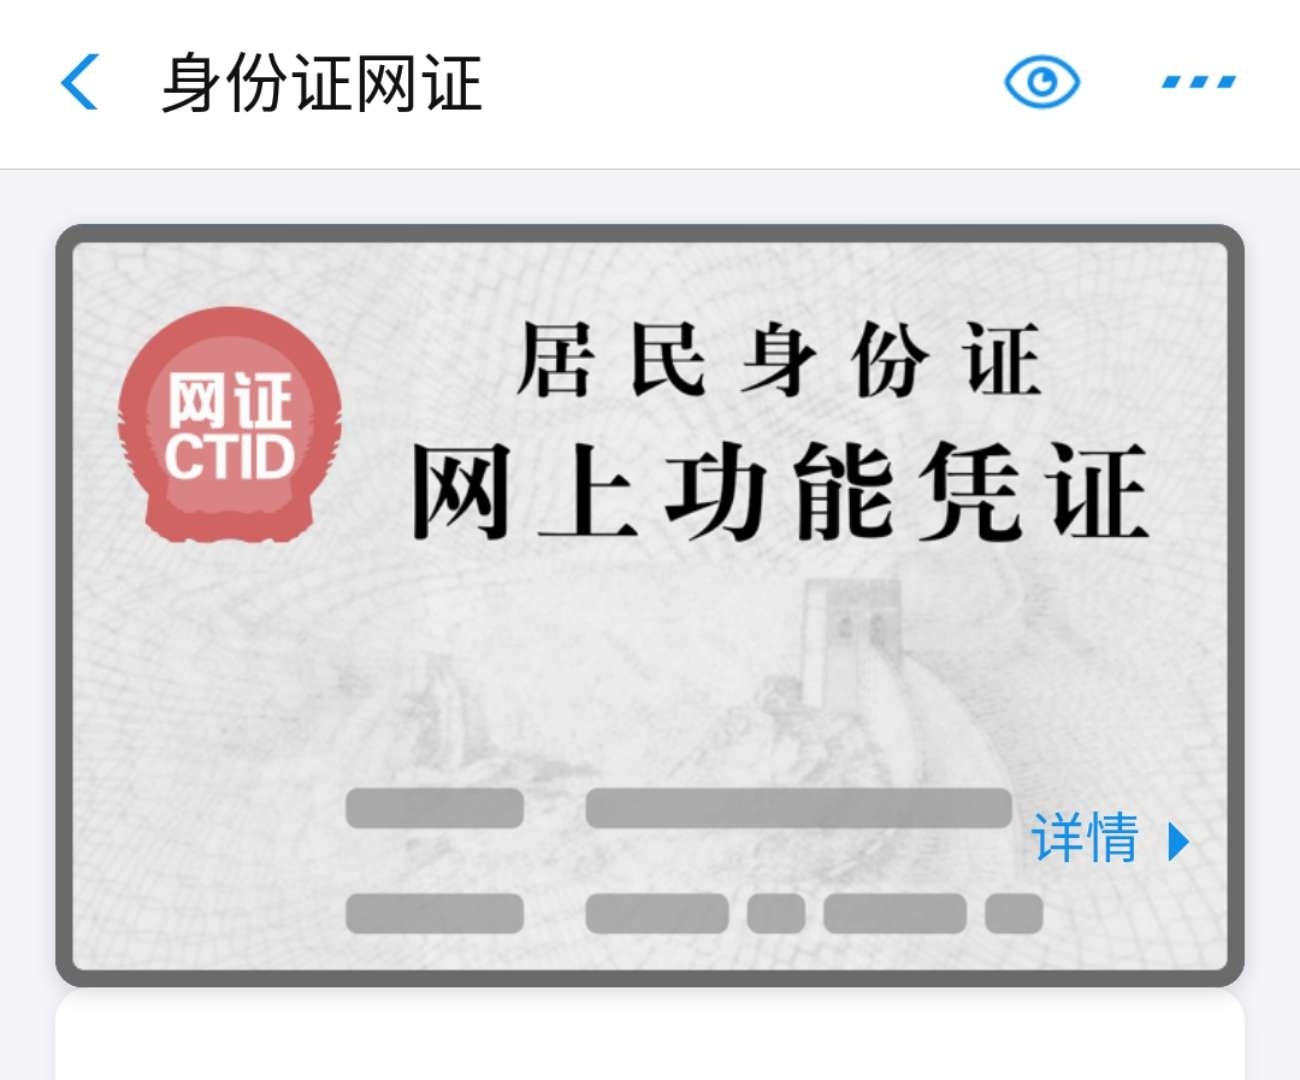 中青在线 | “电子身份证”来了  衢州福州杭州首批试点